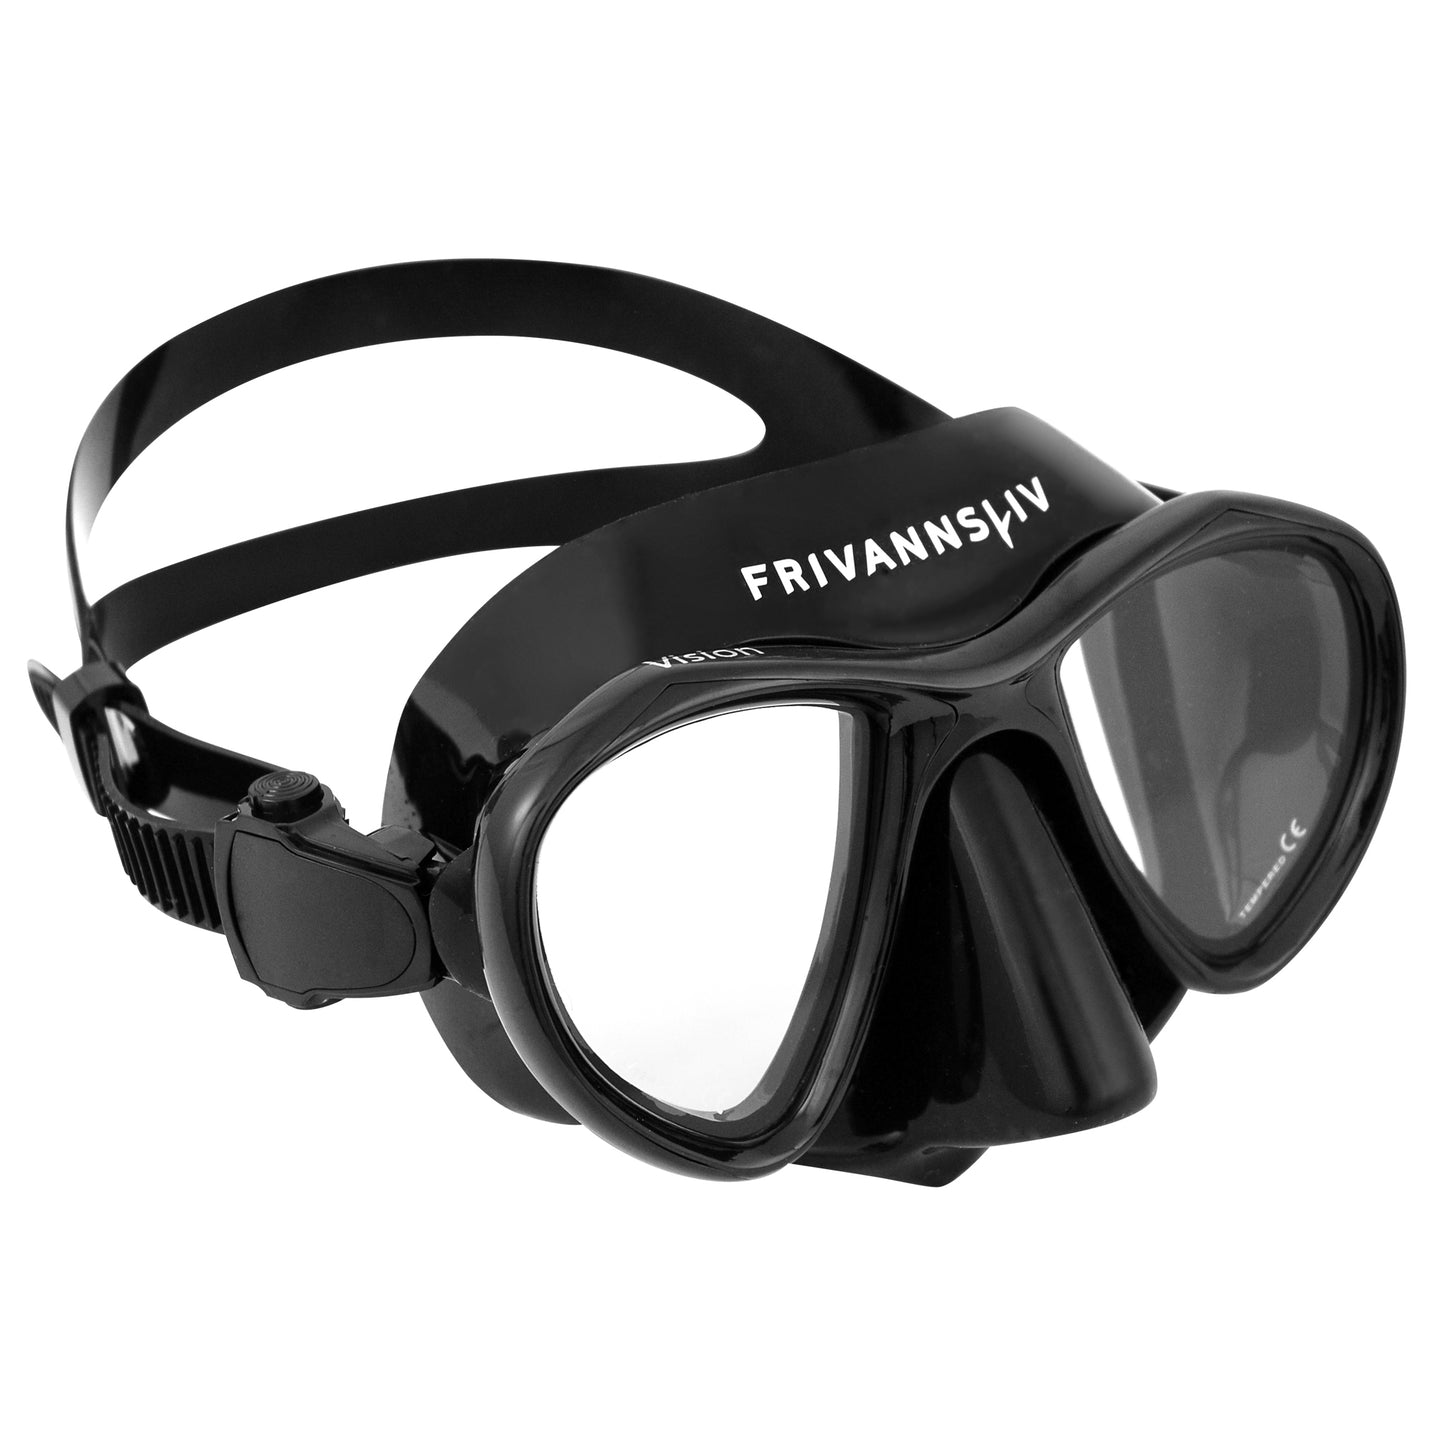 Frivannsliv® Vision diving mask